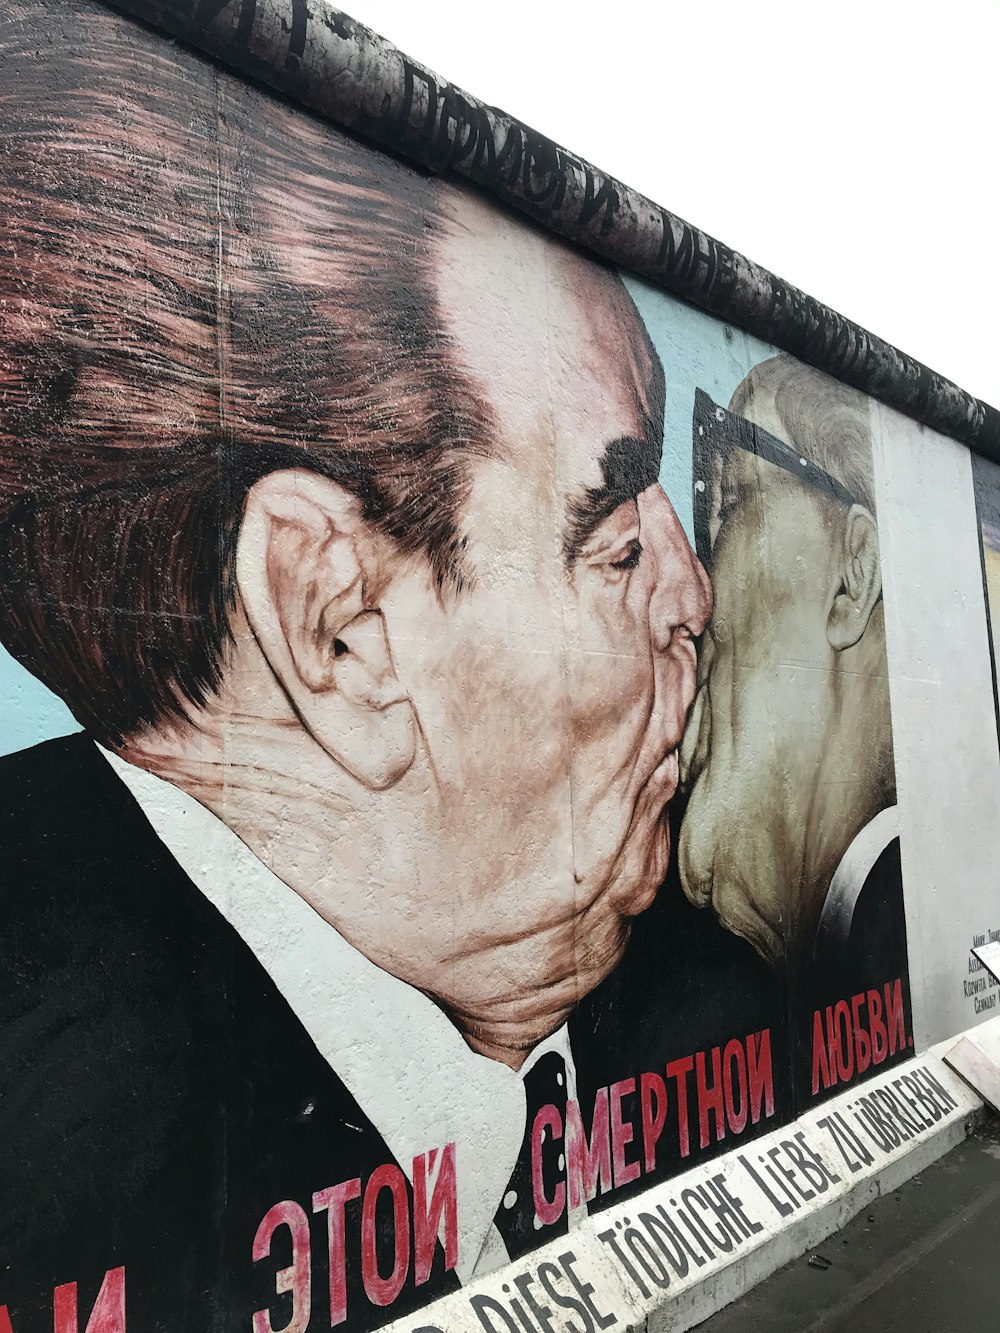 Un gran mural de un hombre besando a otro hombre